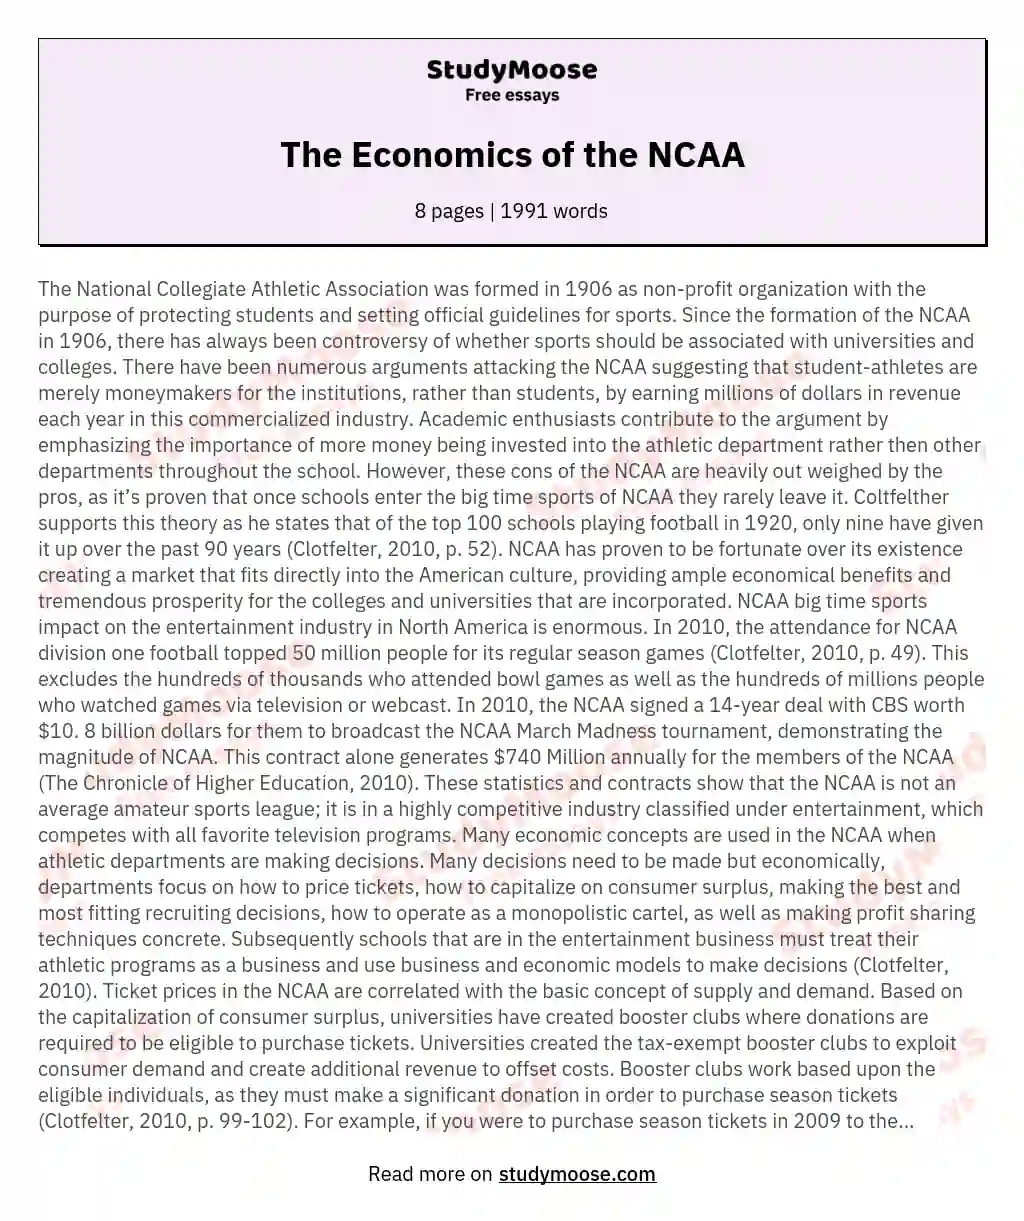 The Economics of the NCAA essay